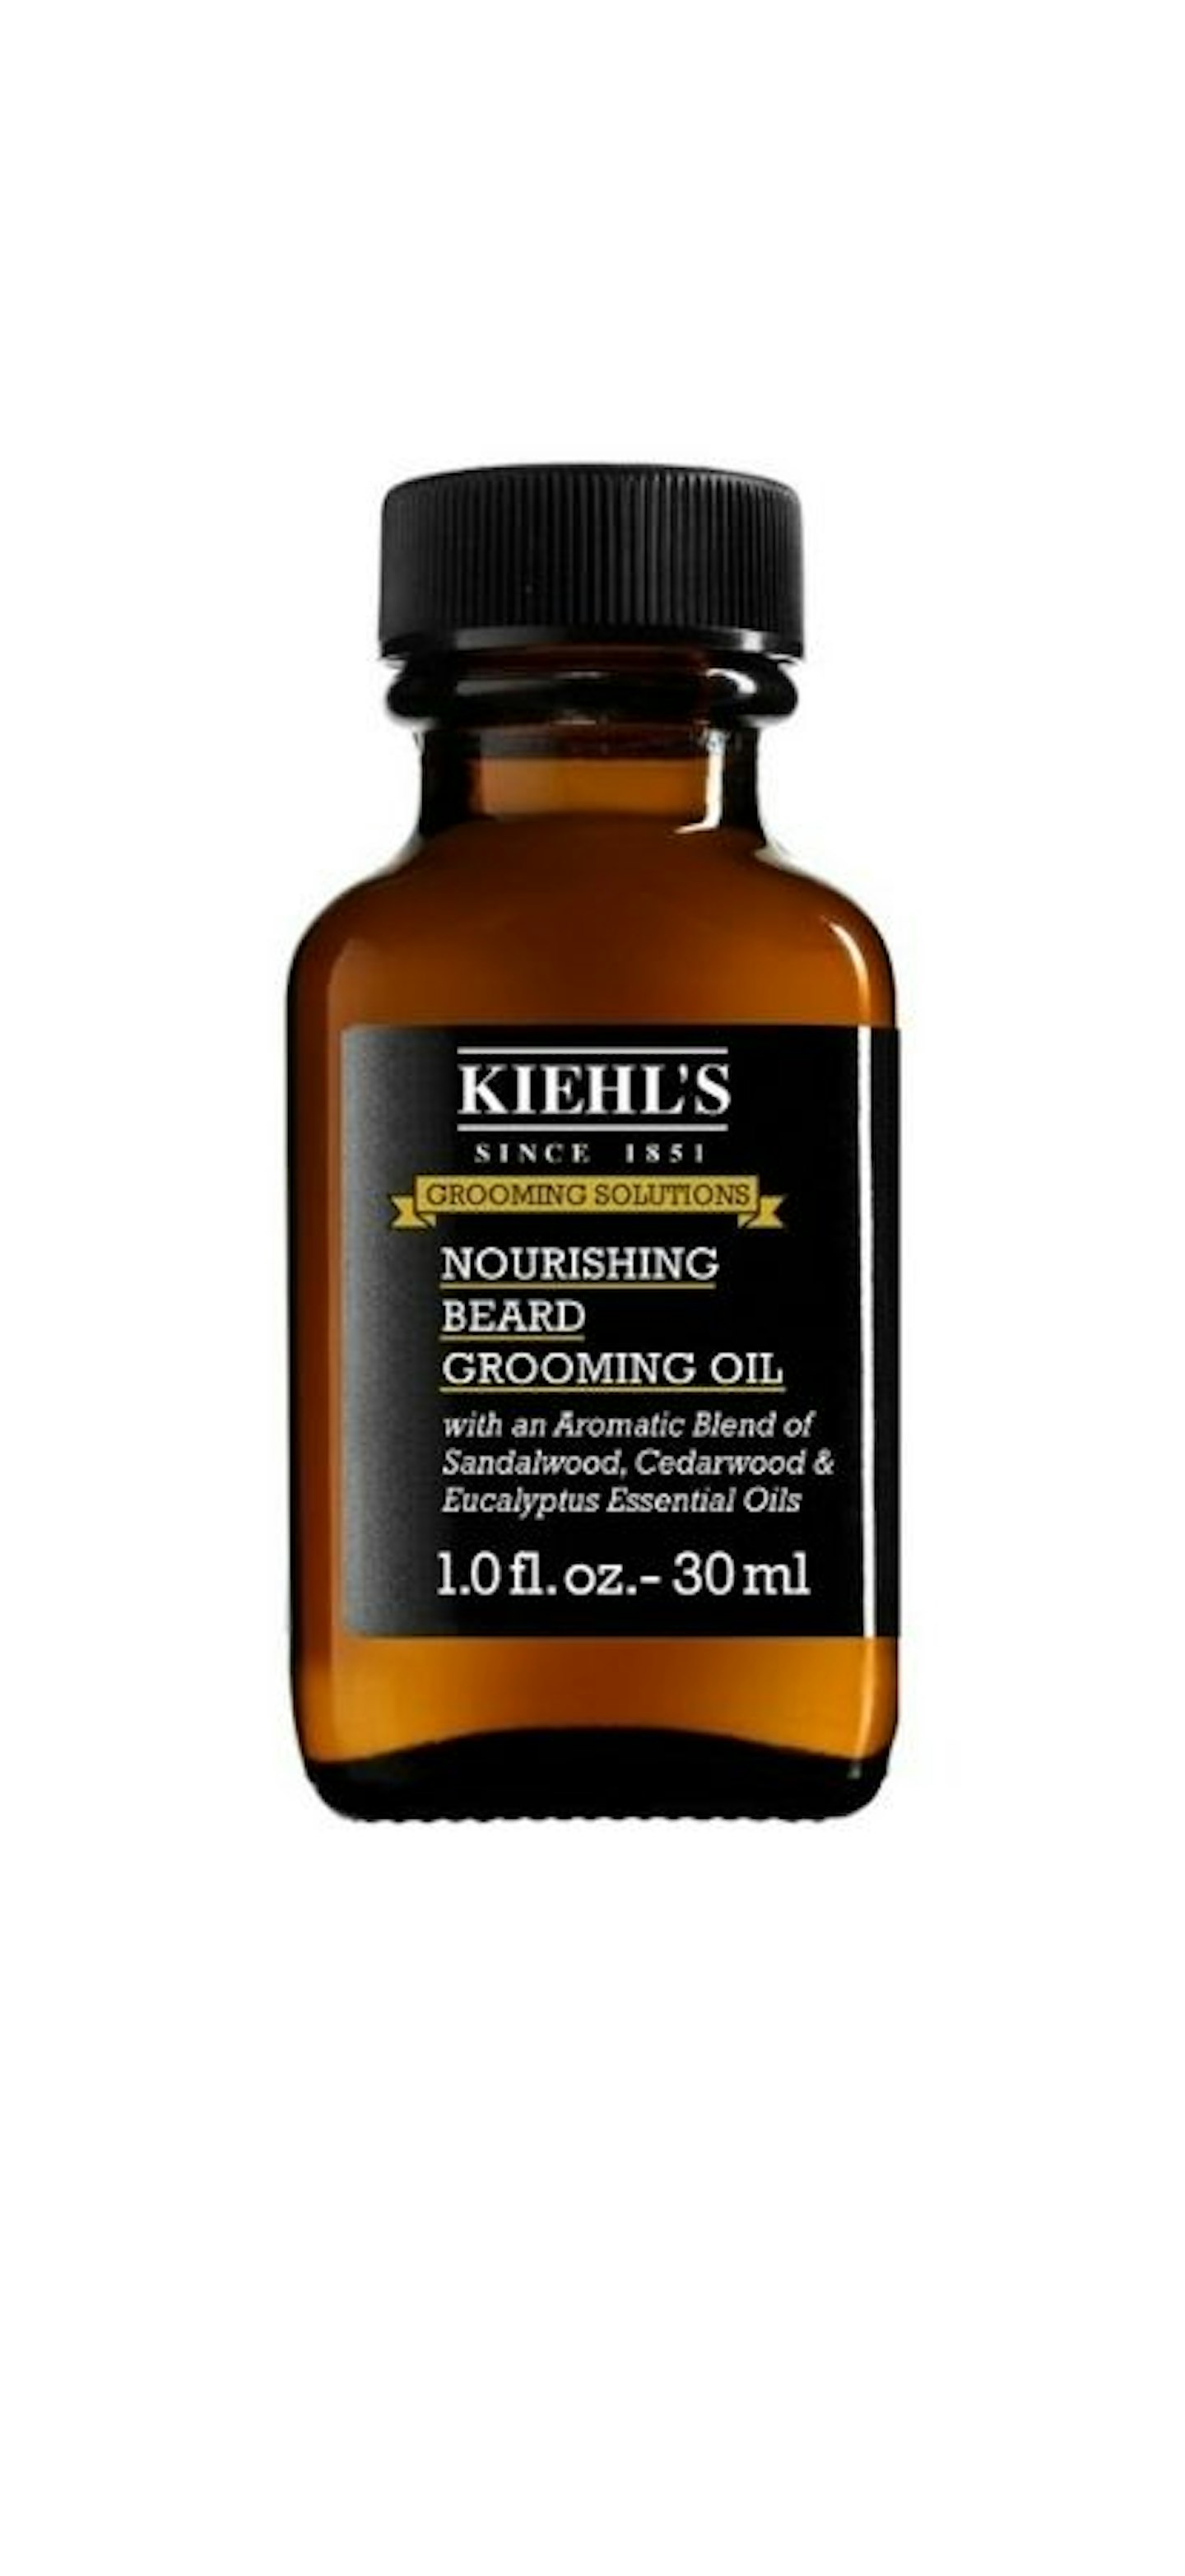 Kiehl's Nourishing Beard Grooming Oil